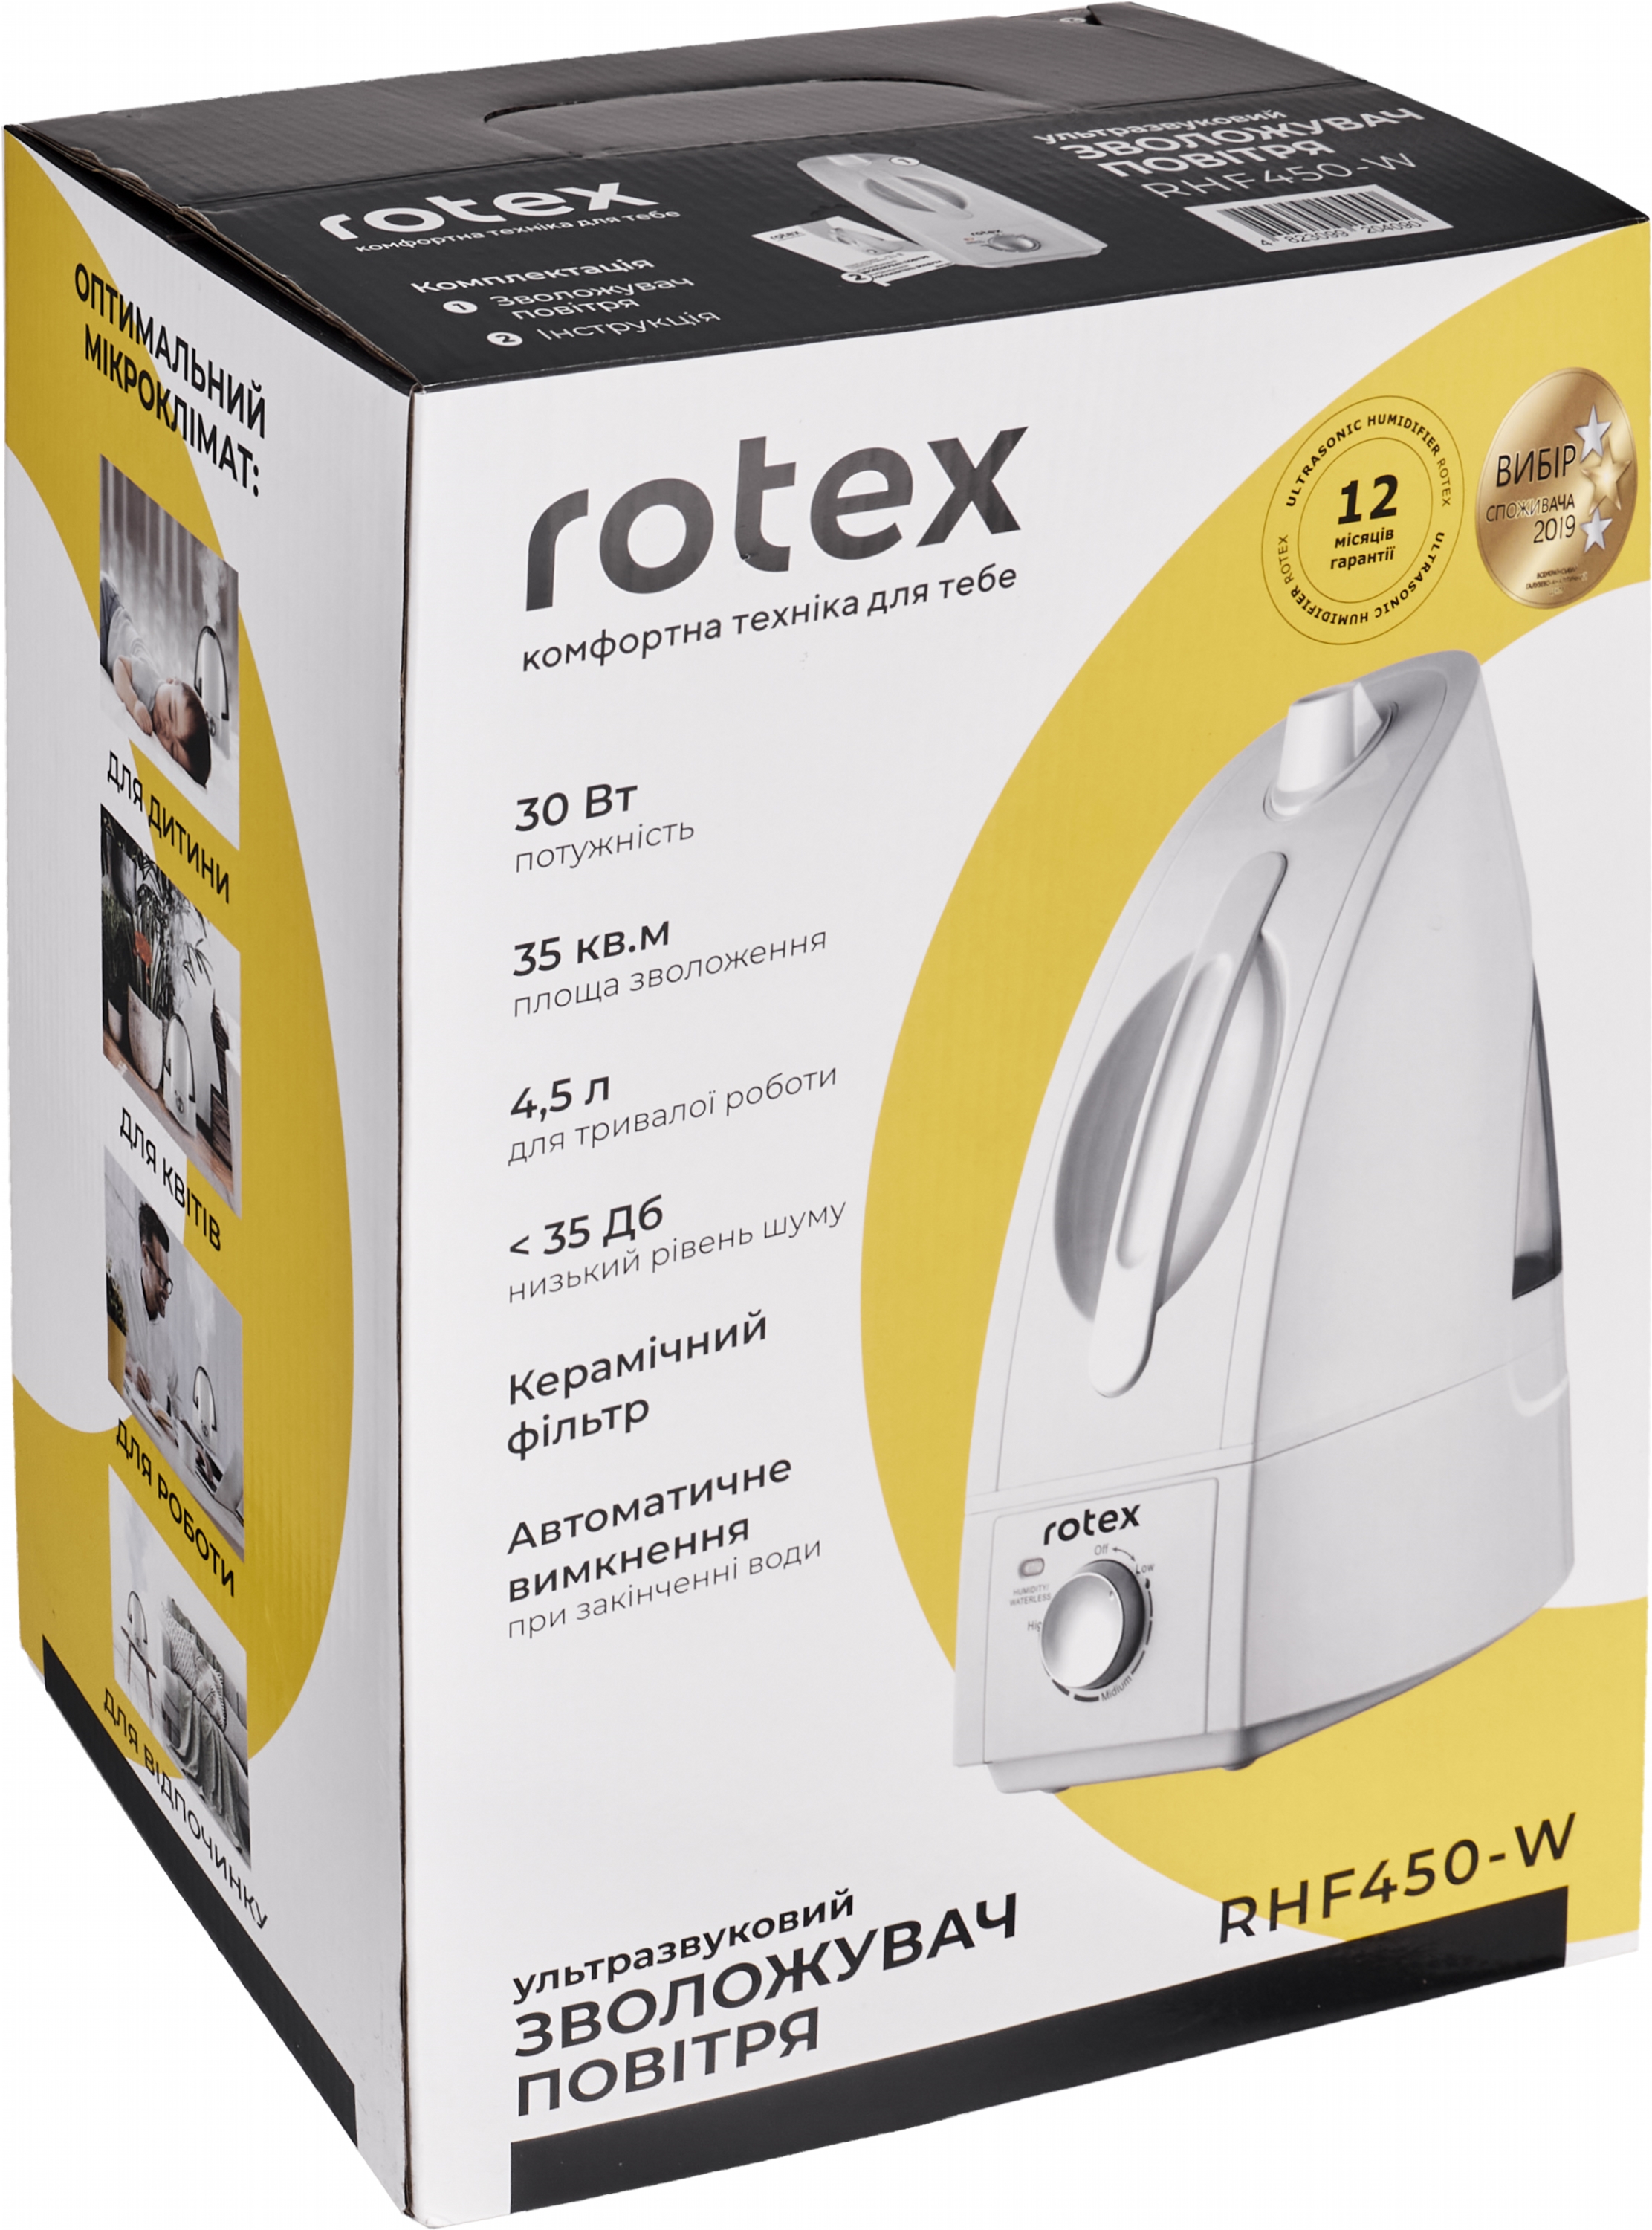 Зволожувач повітря Rotex RHF450-W характеристики - фотографія 7